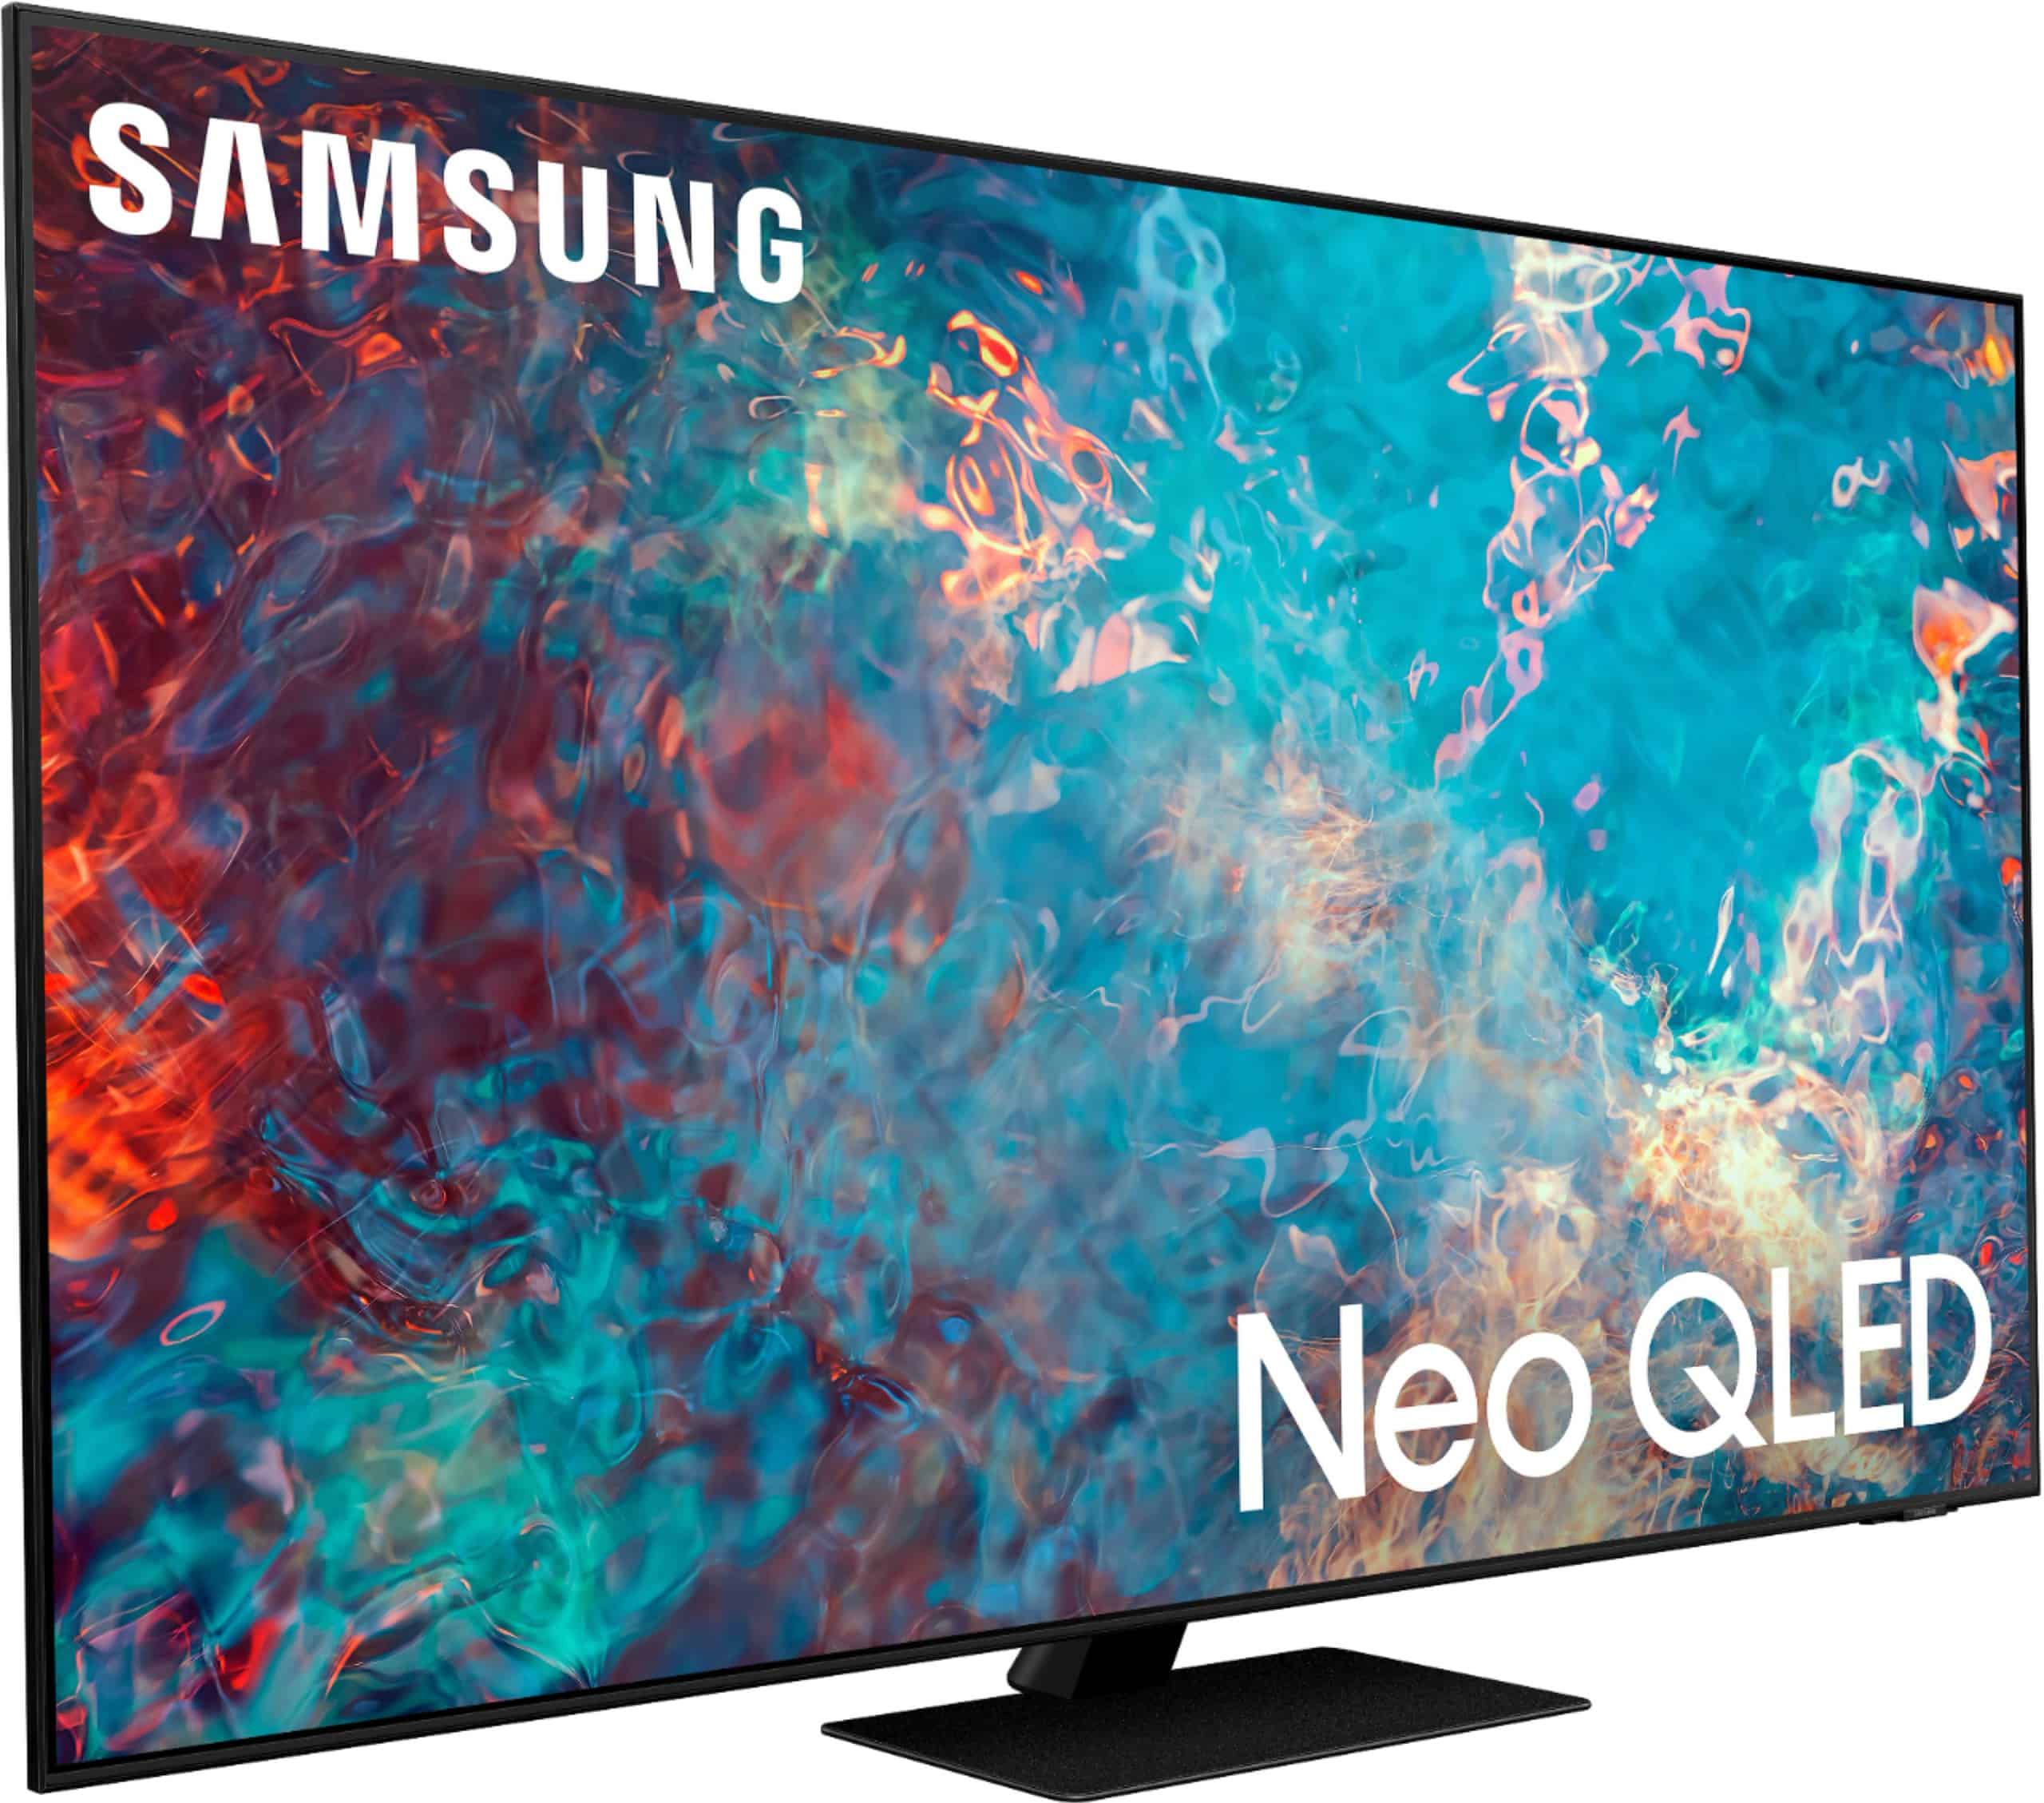 Alerta de oferta: Samsung 85 Class QN85A Neo QLED 4K Smart TV